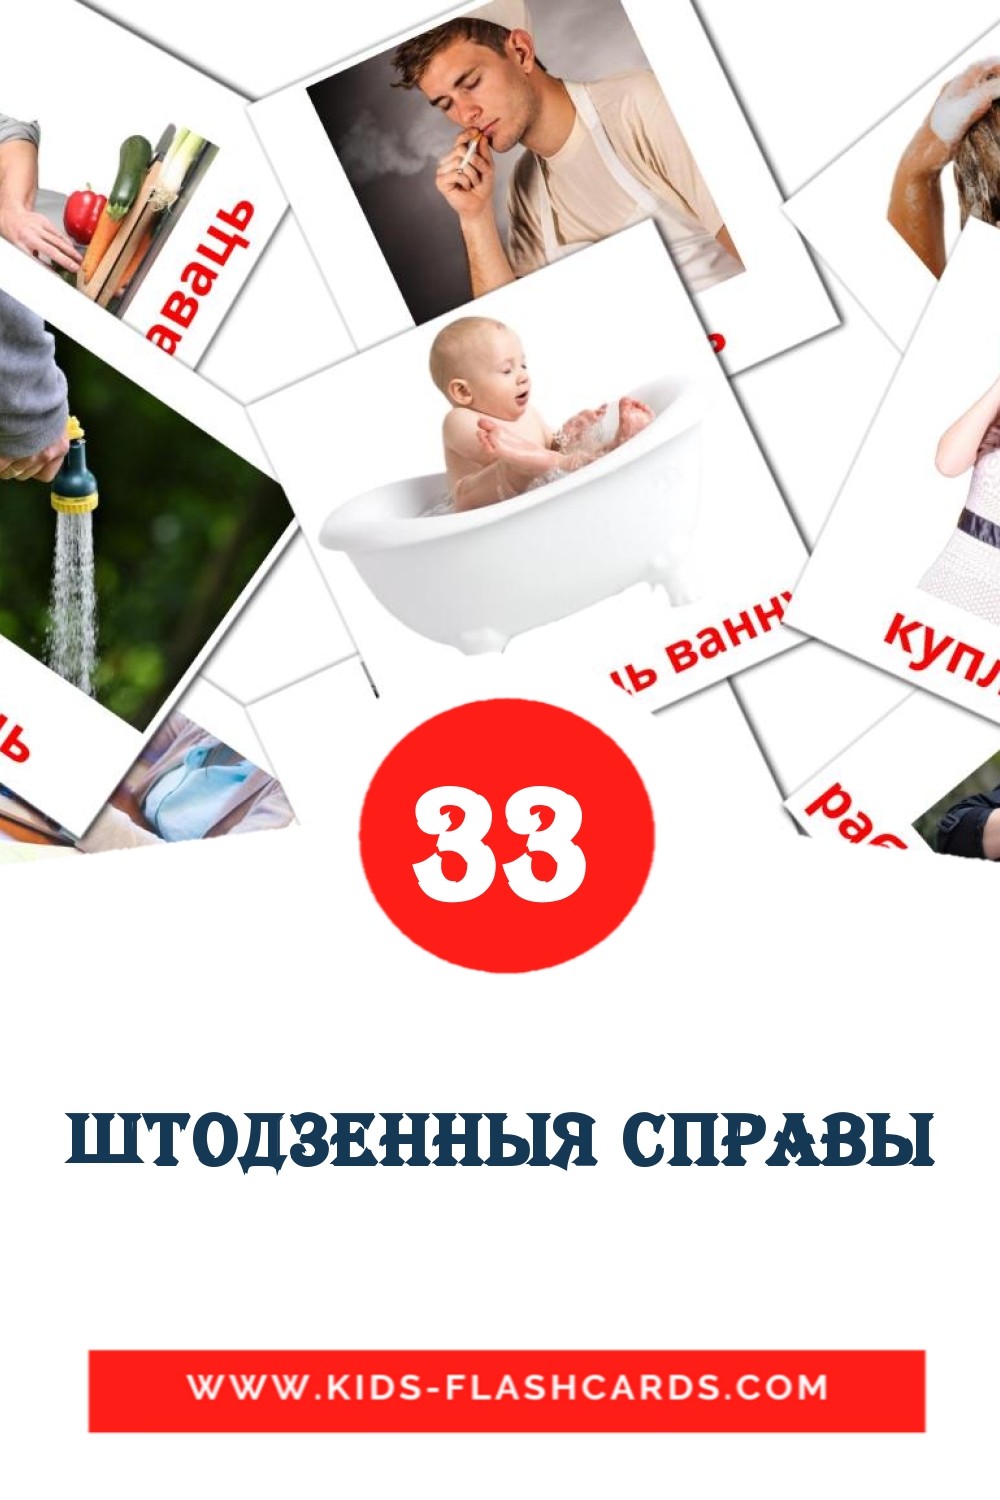 33 штодзенныя справы fotokaarten voor kleuters in het wit-russisch